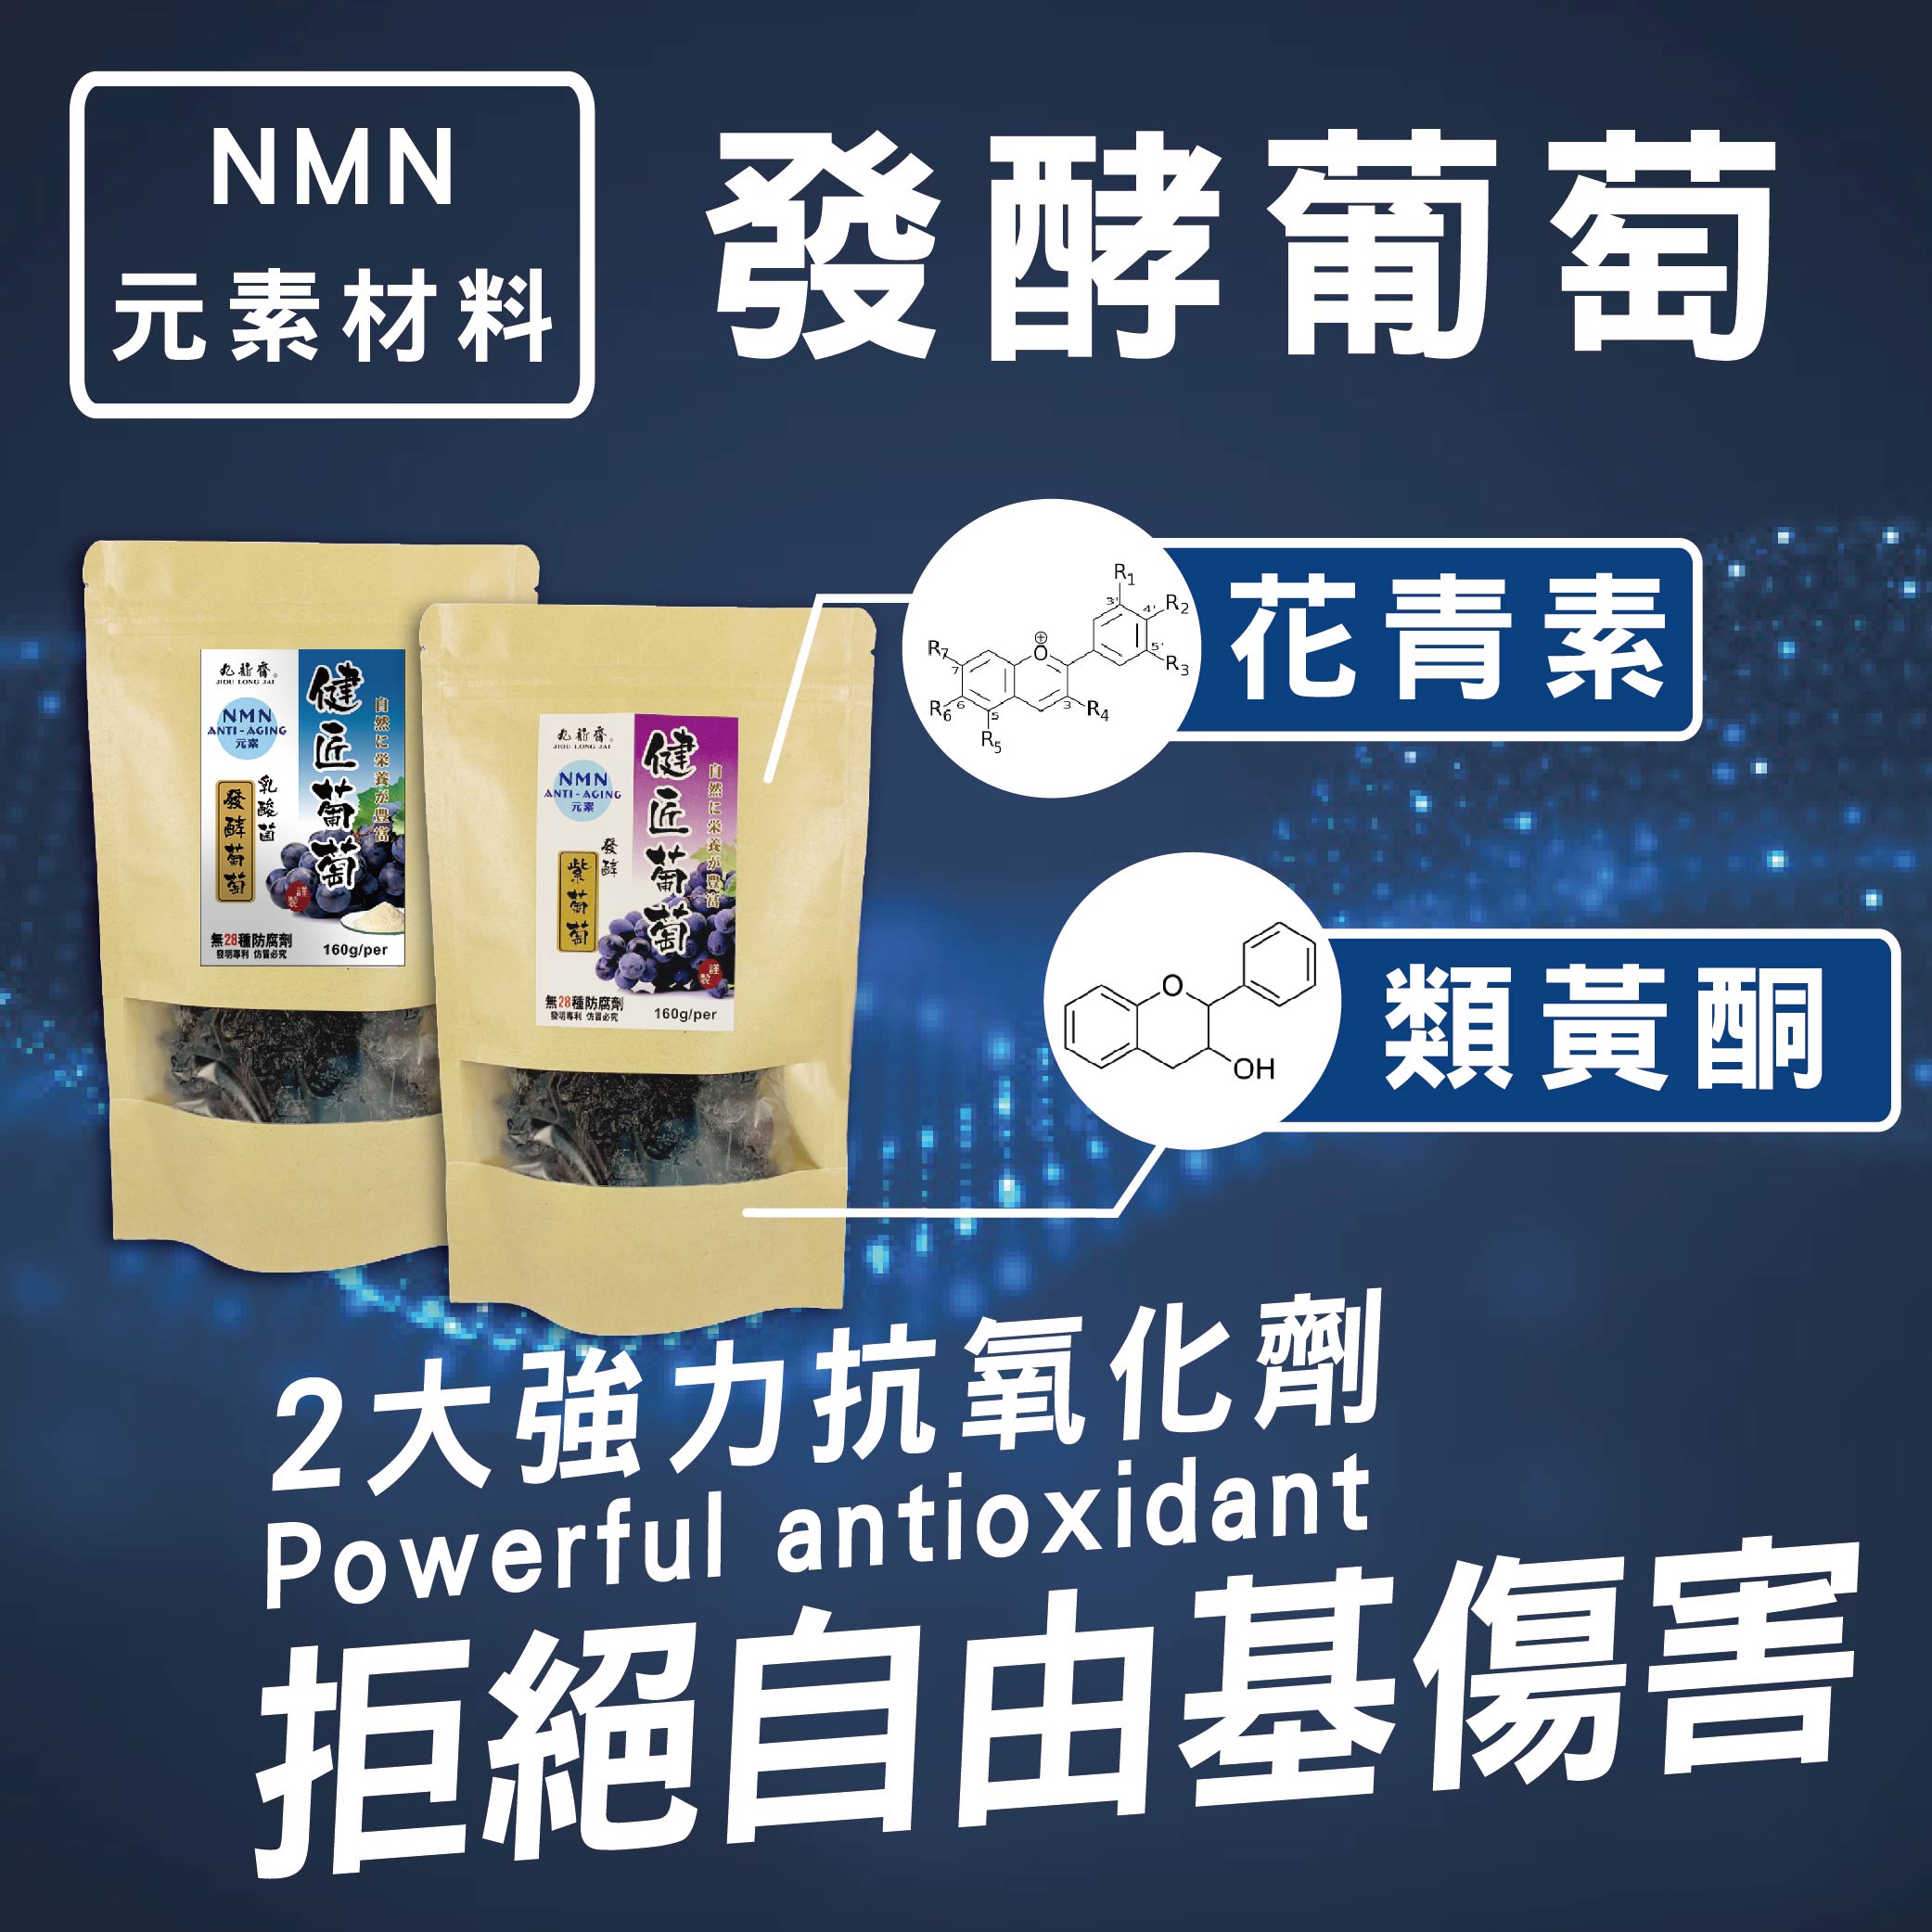 九龍齋 NMN發酵葡萄 160g/包 - 天然醋釀葡萄 / 白黎蘆醇